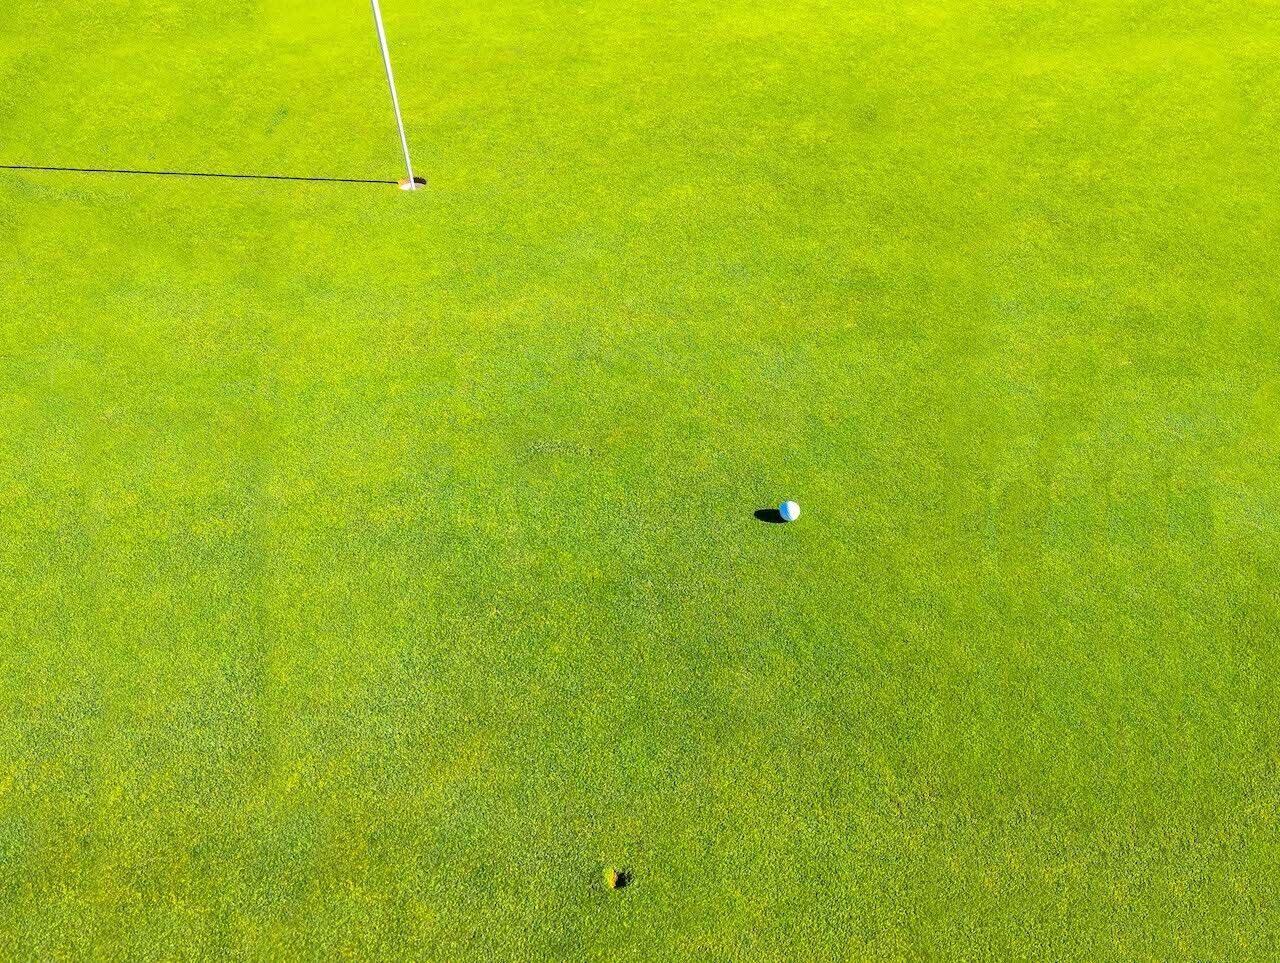 divot from golf ball near hole